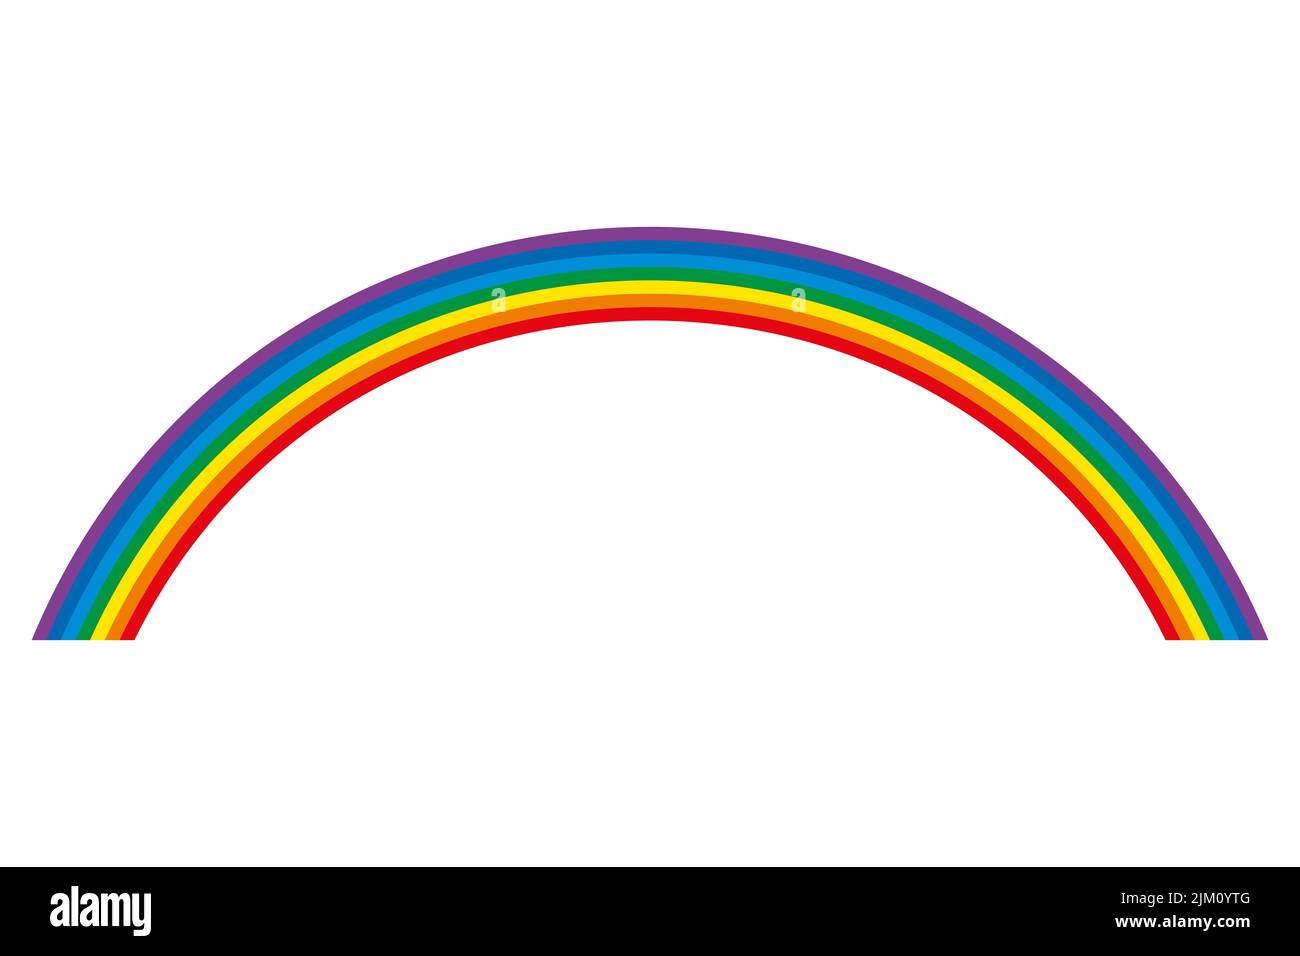 Arcobaleno, arco circolare multicolore. 7 barre di colore piegate, che rappresentano lo spettro della luce visibile. Rosso, arancione, giallo, verde, ciano, blu, viola. Foto Stock